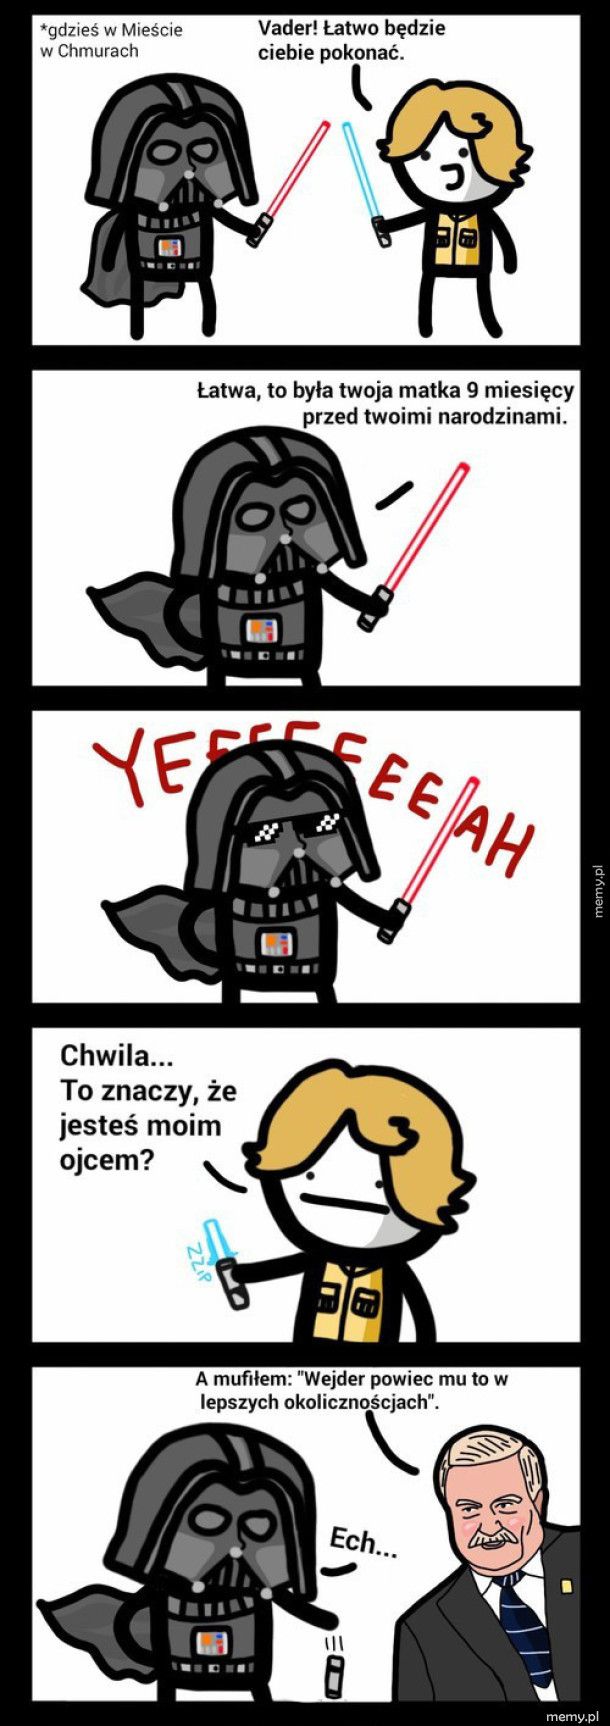 Luke Skywalker vs. Darth Vader